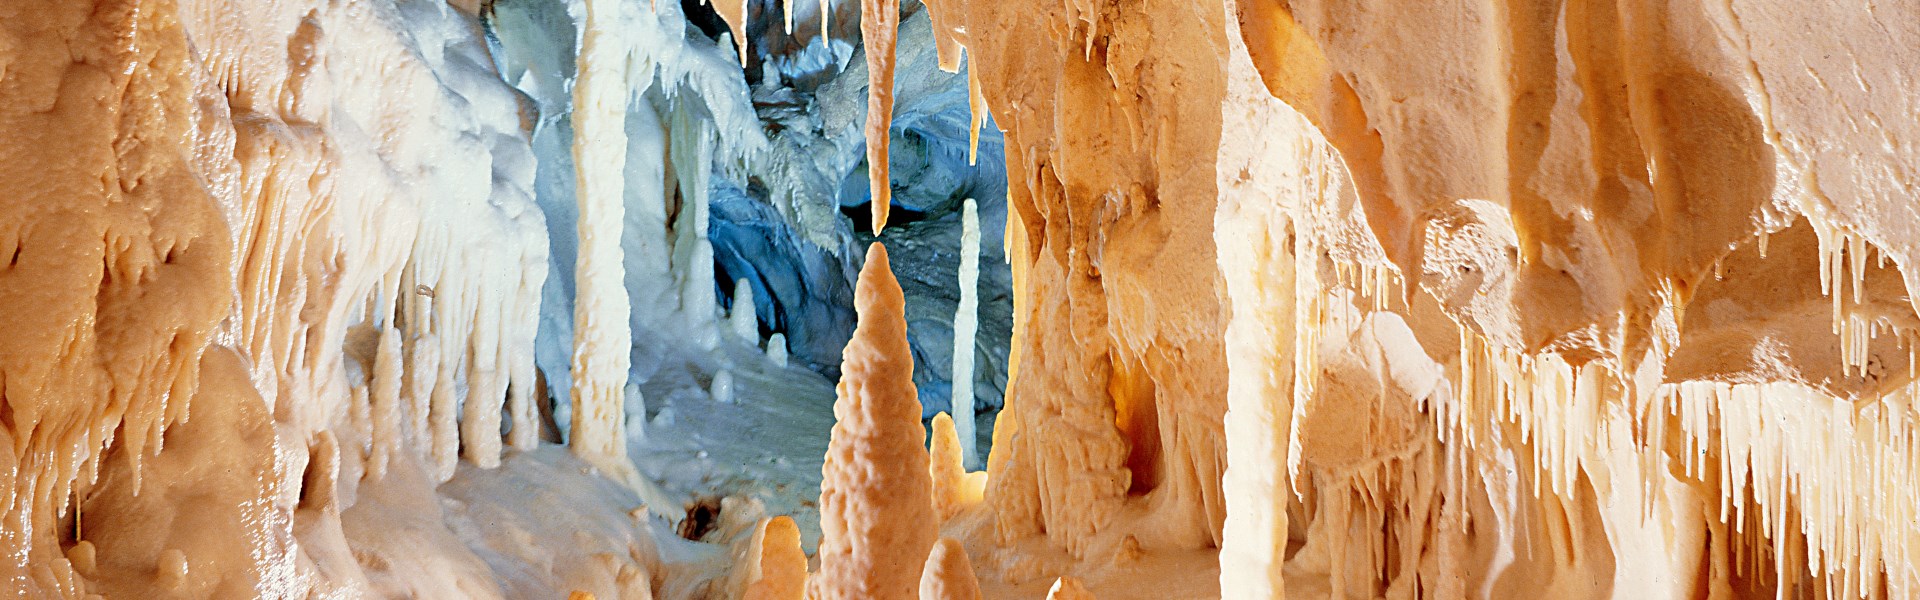 Grotte di Frasassi - Parco regionale Gola della Rossa e di Frasassi